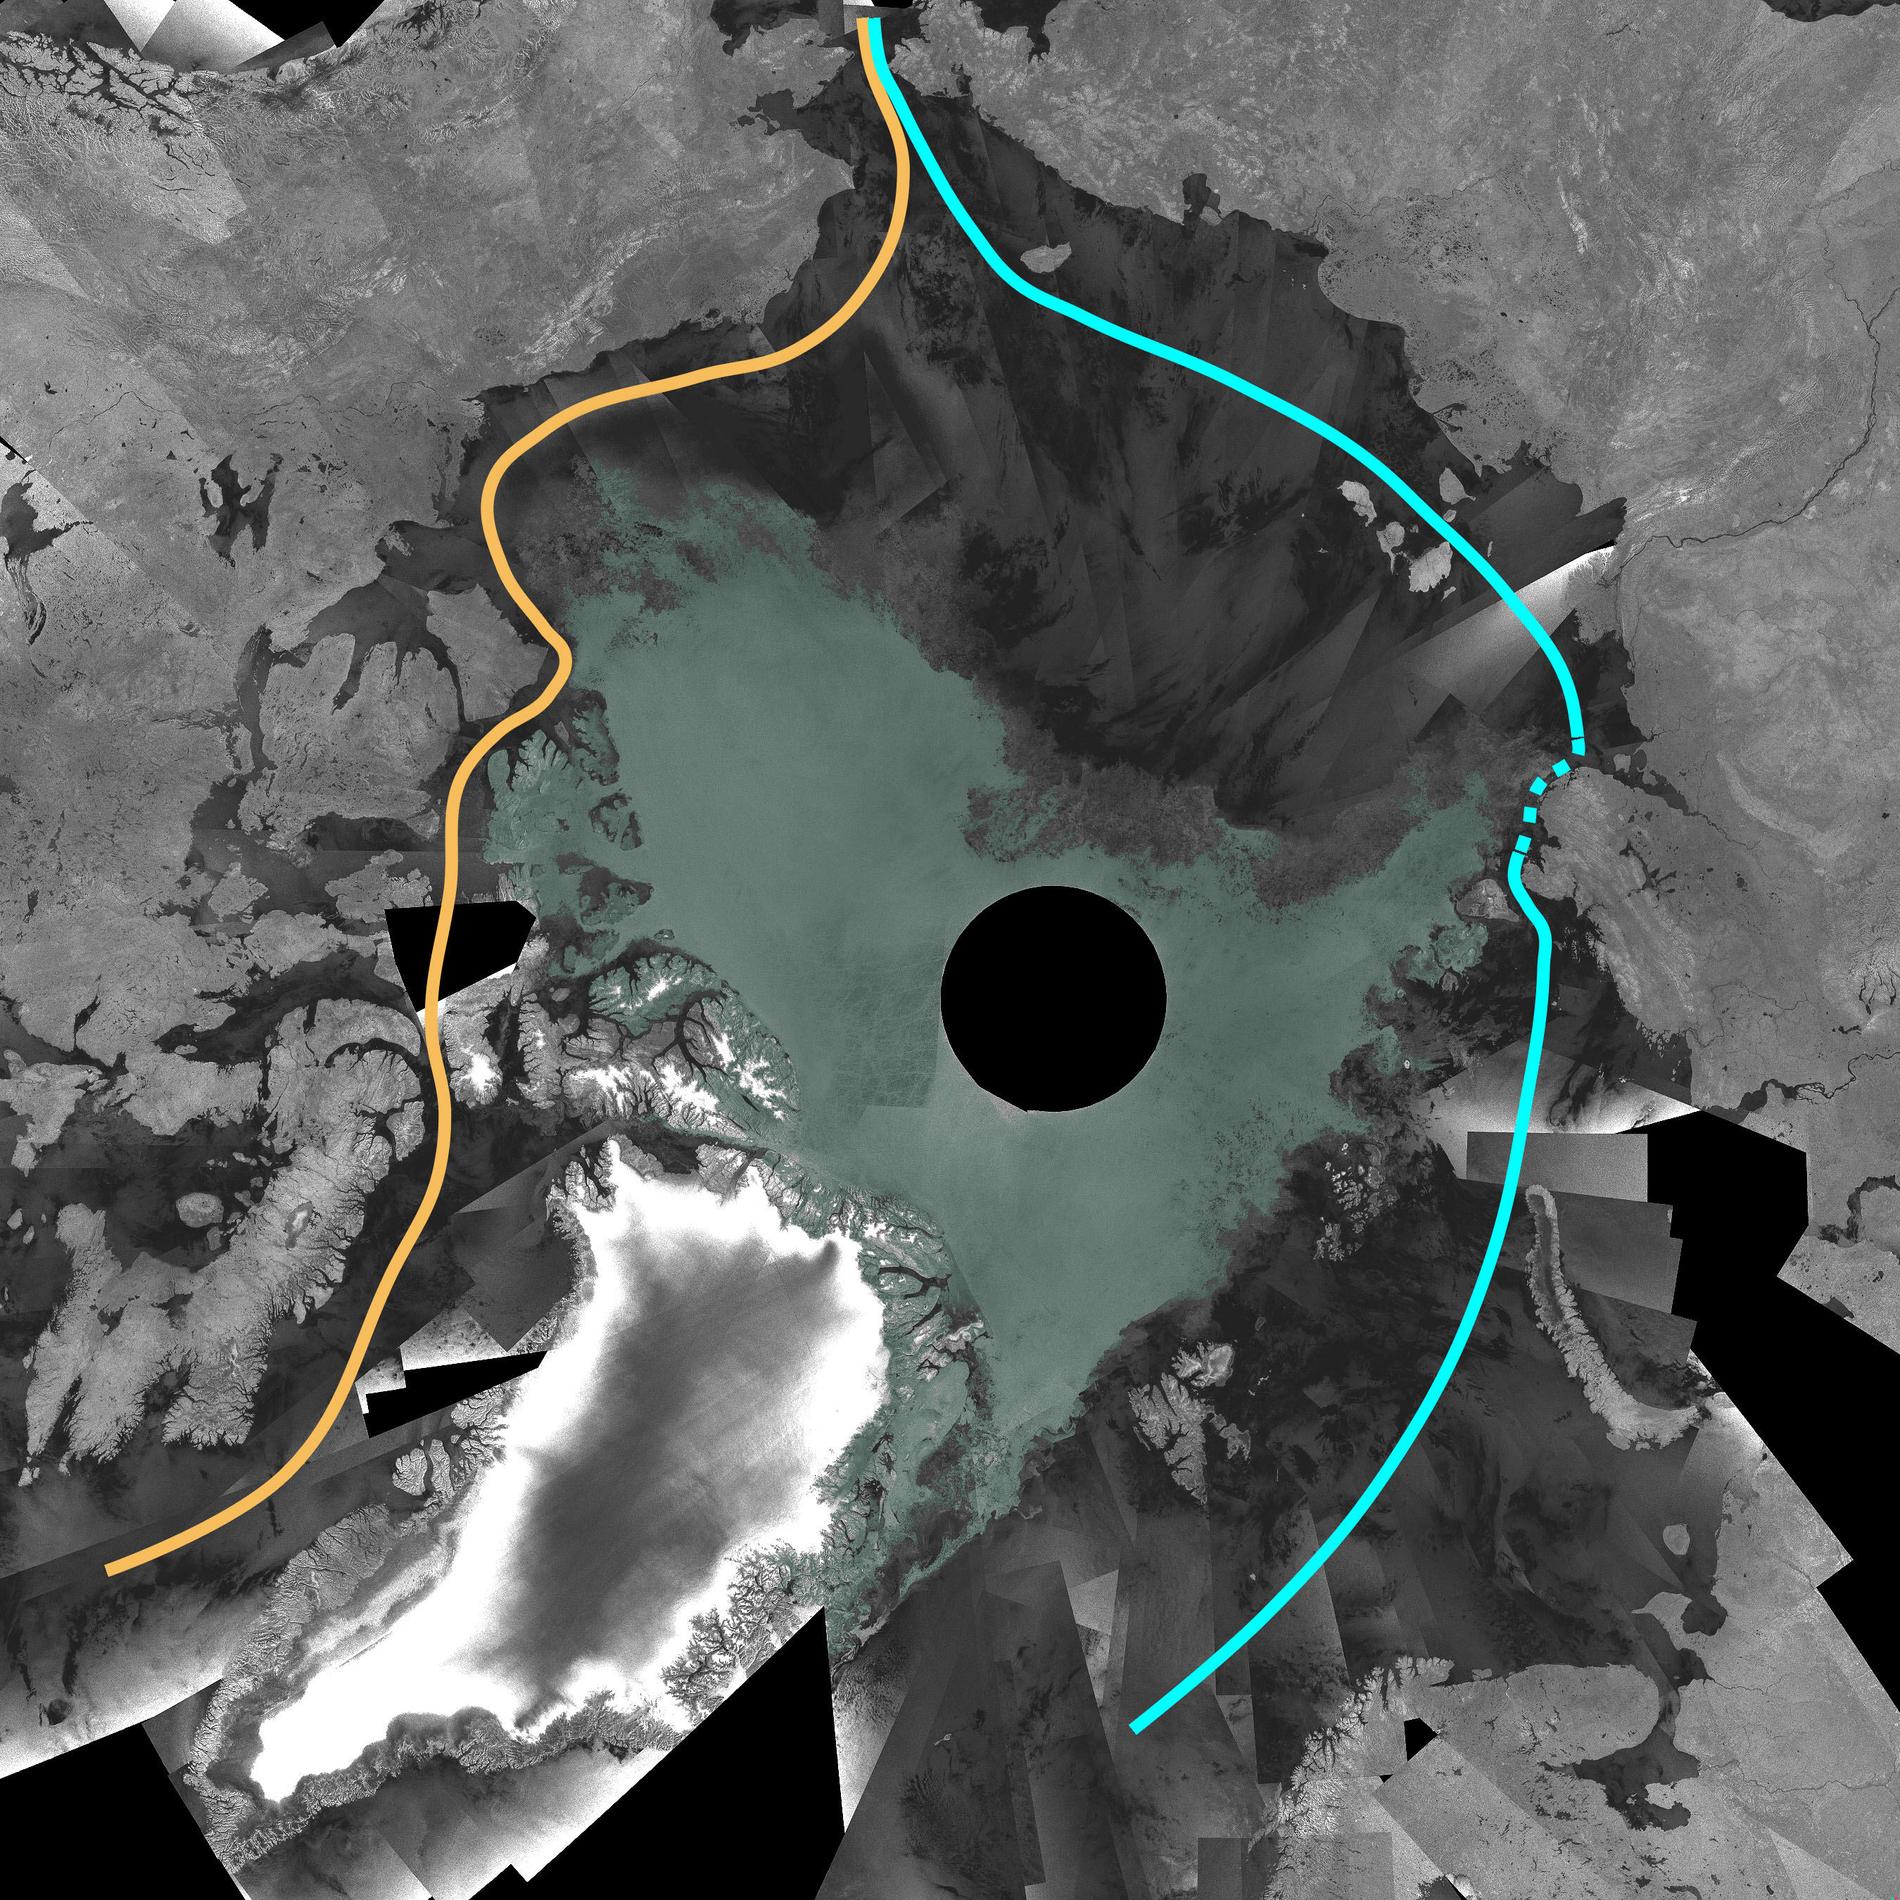 SJÖVÄGEN GENOM ARKTIS ÖPPEN De nya satellitbilderna visar att den tidigare stängda sjövägen genom Arktis nu blivit framkomlig. Den gula markeringen visar Nordvästpassagen norr om Kanada som nu är helt farbar. Den blå markeringen visar Nordostpassagen norr om Ryssland där det streckade området fortfarande är spärrad av is.